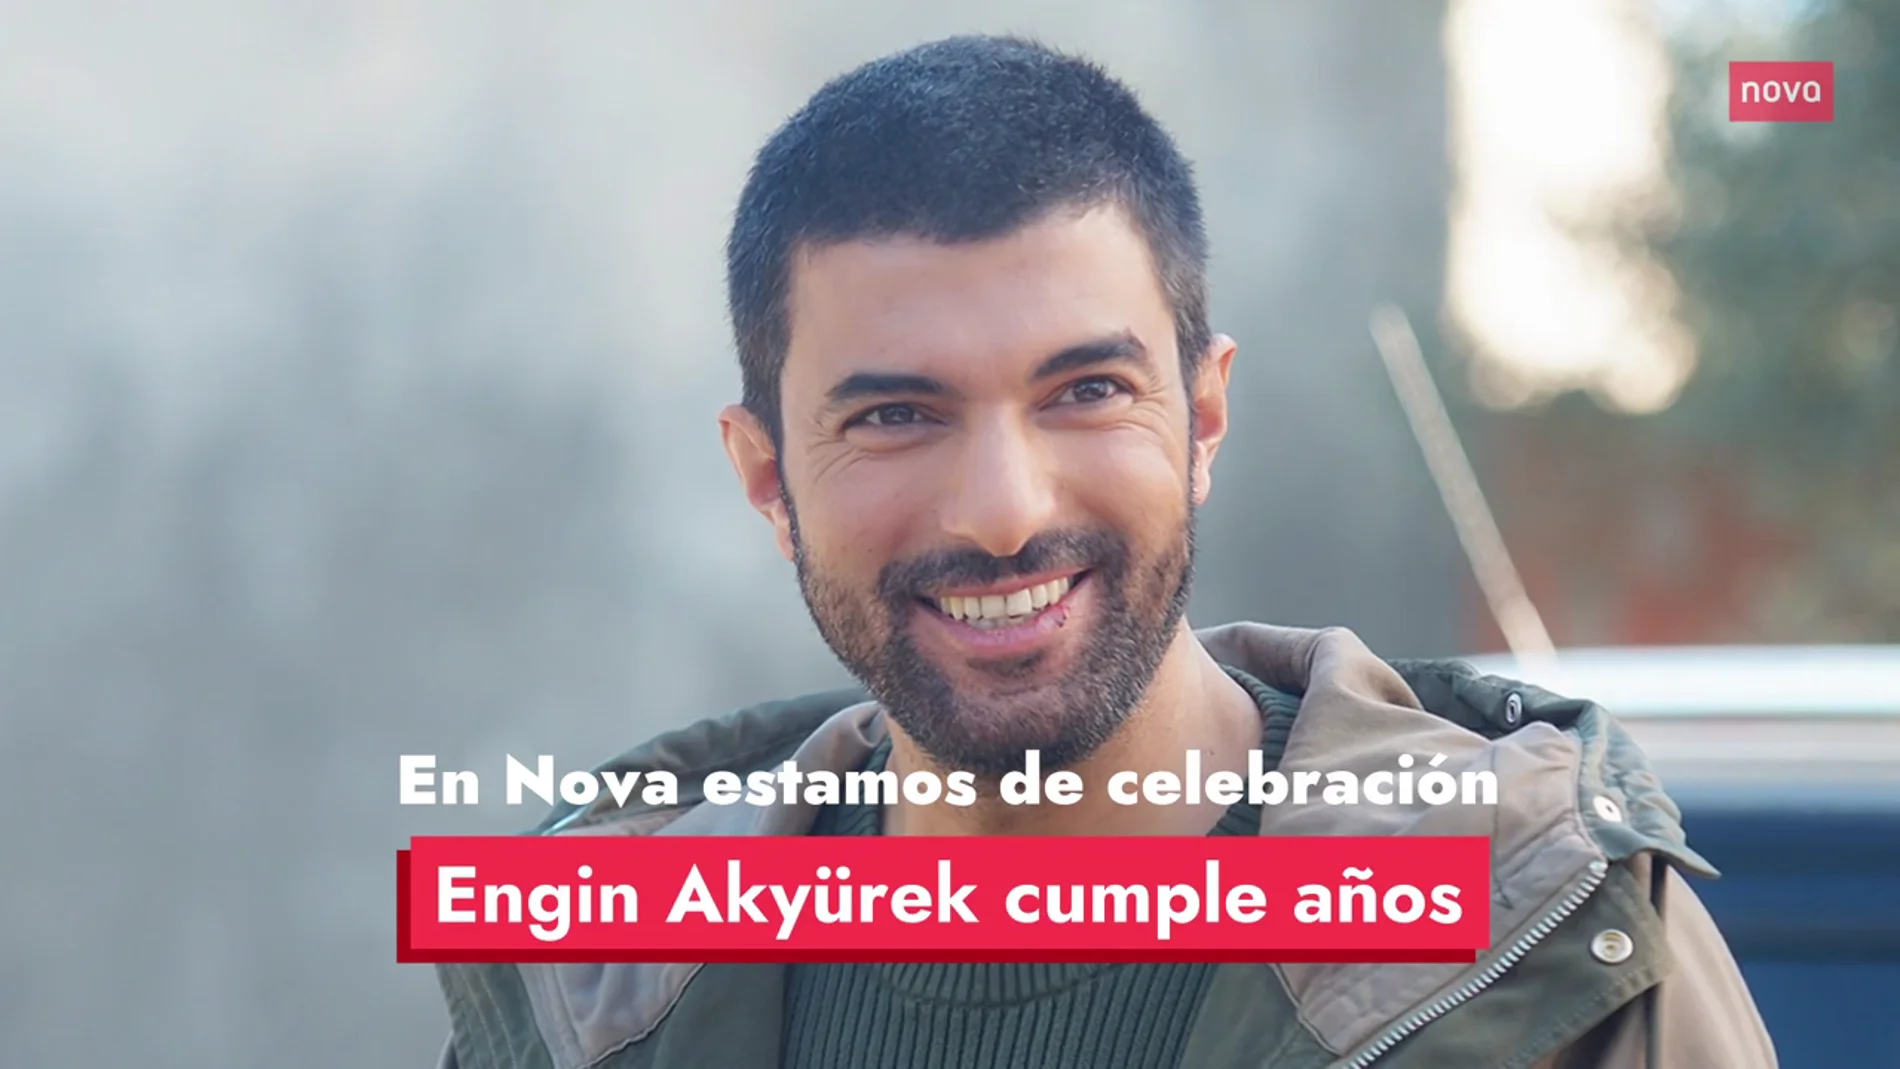 Engin Akyürek, el galán de Nova, cumple 41 años